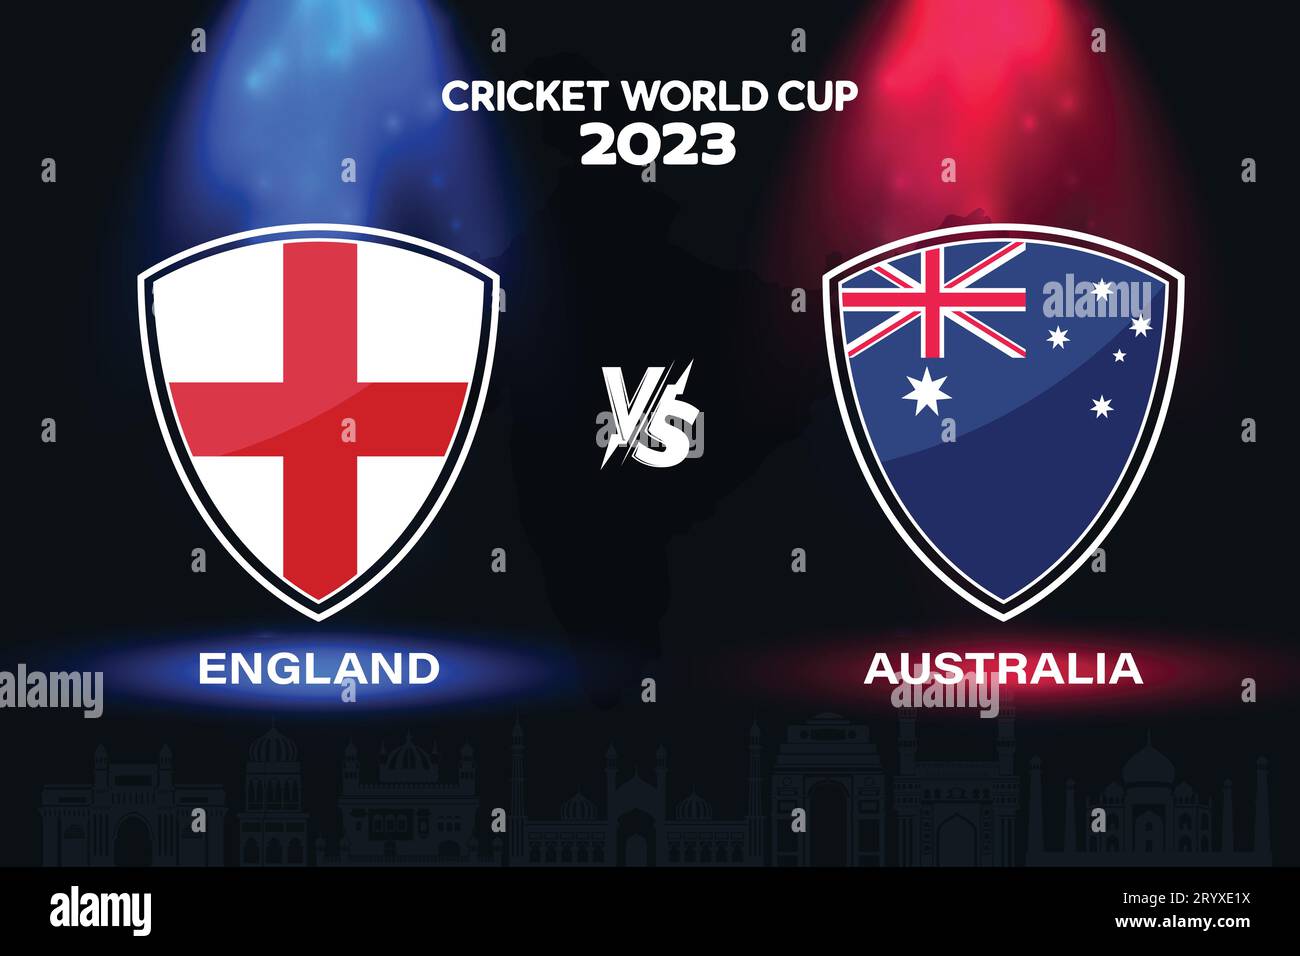 Logo de drapeau de cricket international Angleterre vs Australie sur fond d'horizon indien pour la finale de la coupe du monde 2023. Vecteur EPS pour match sportif Illustration de Vecteur